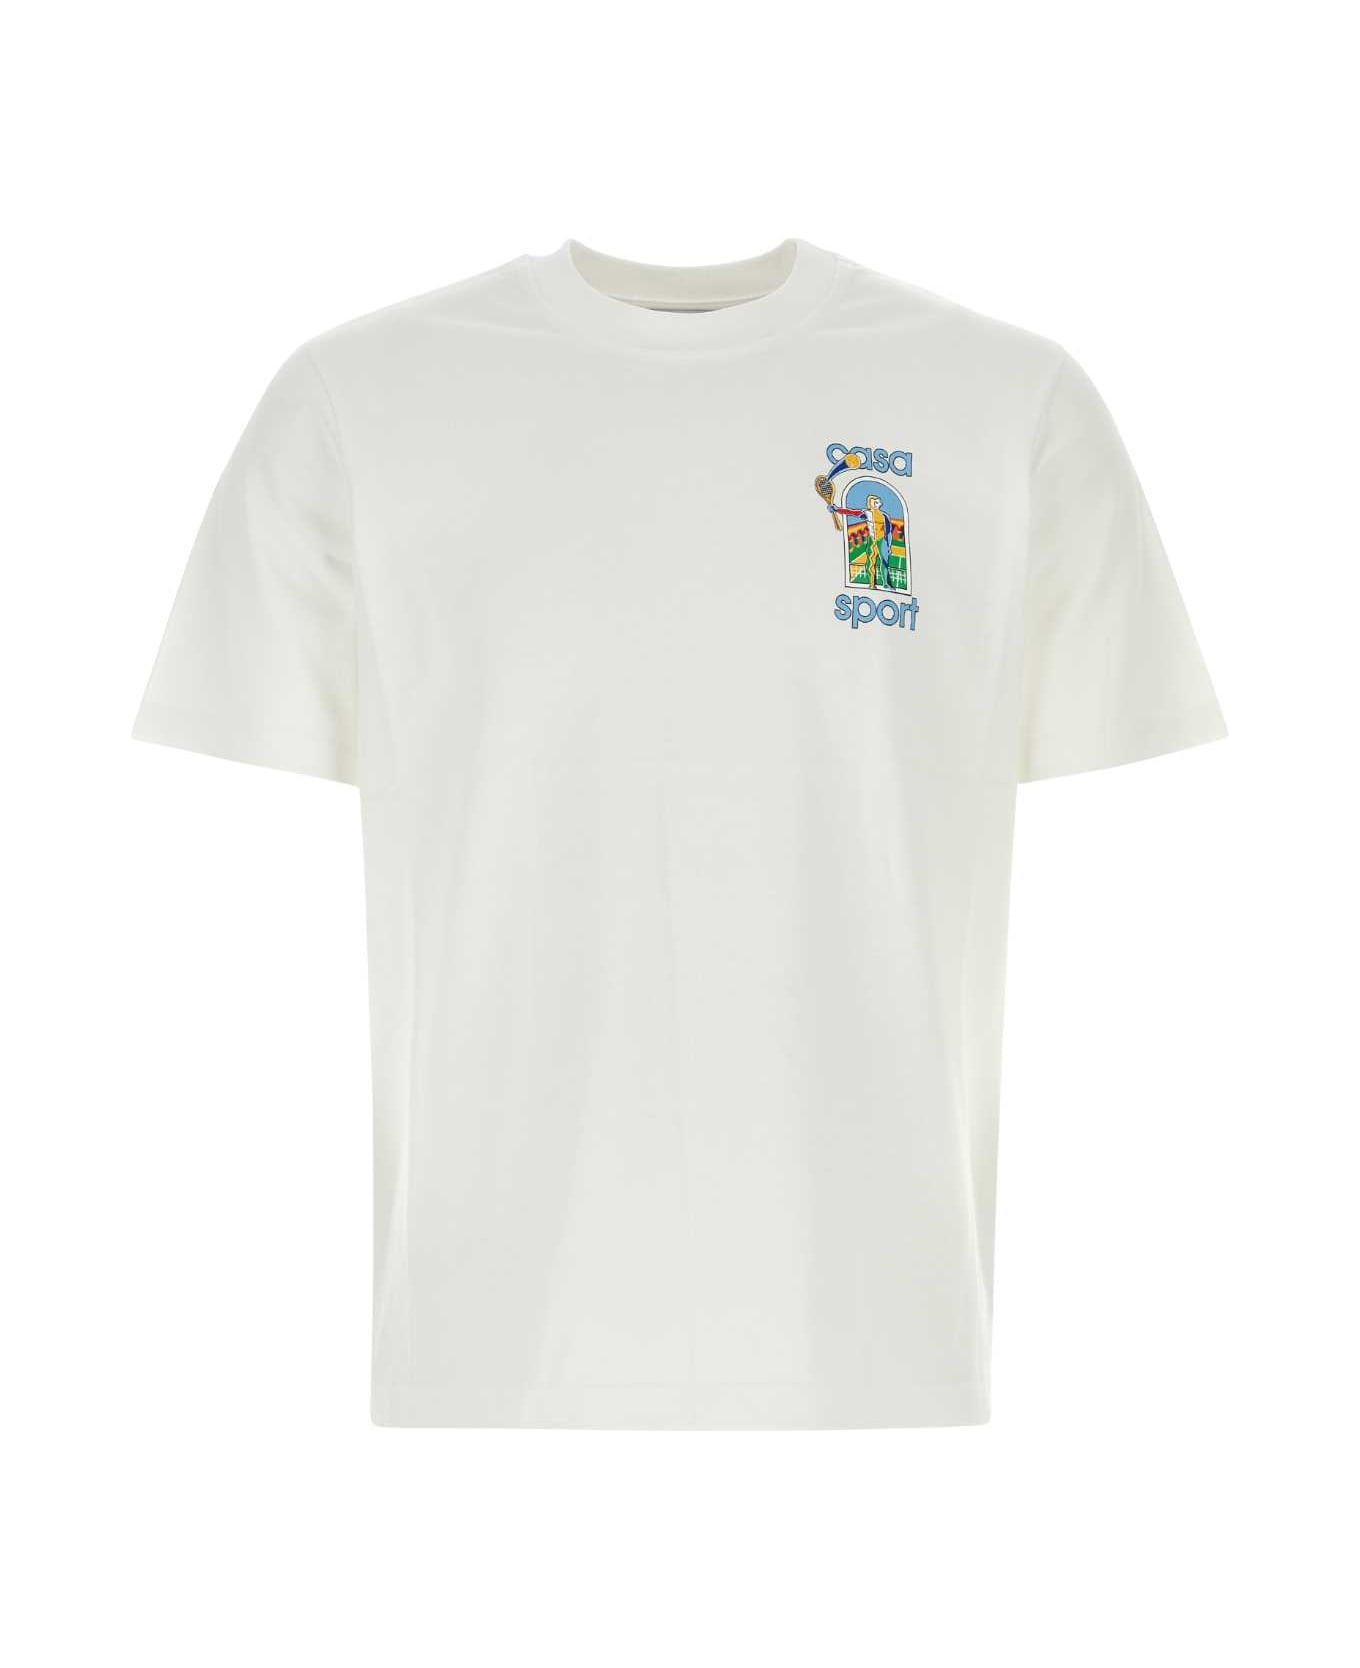 Casablanca White Cotton T-shirt - LEJEUCOL